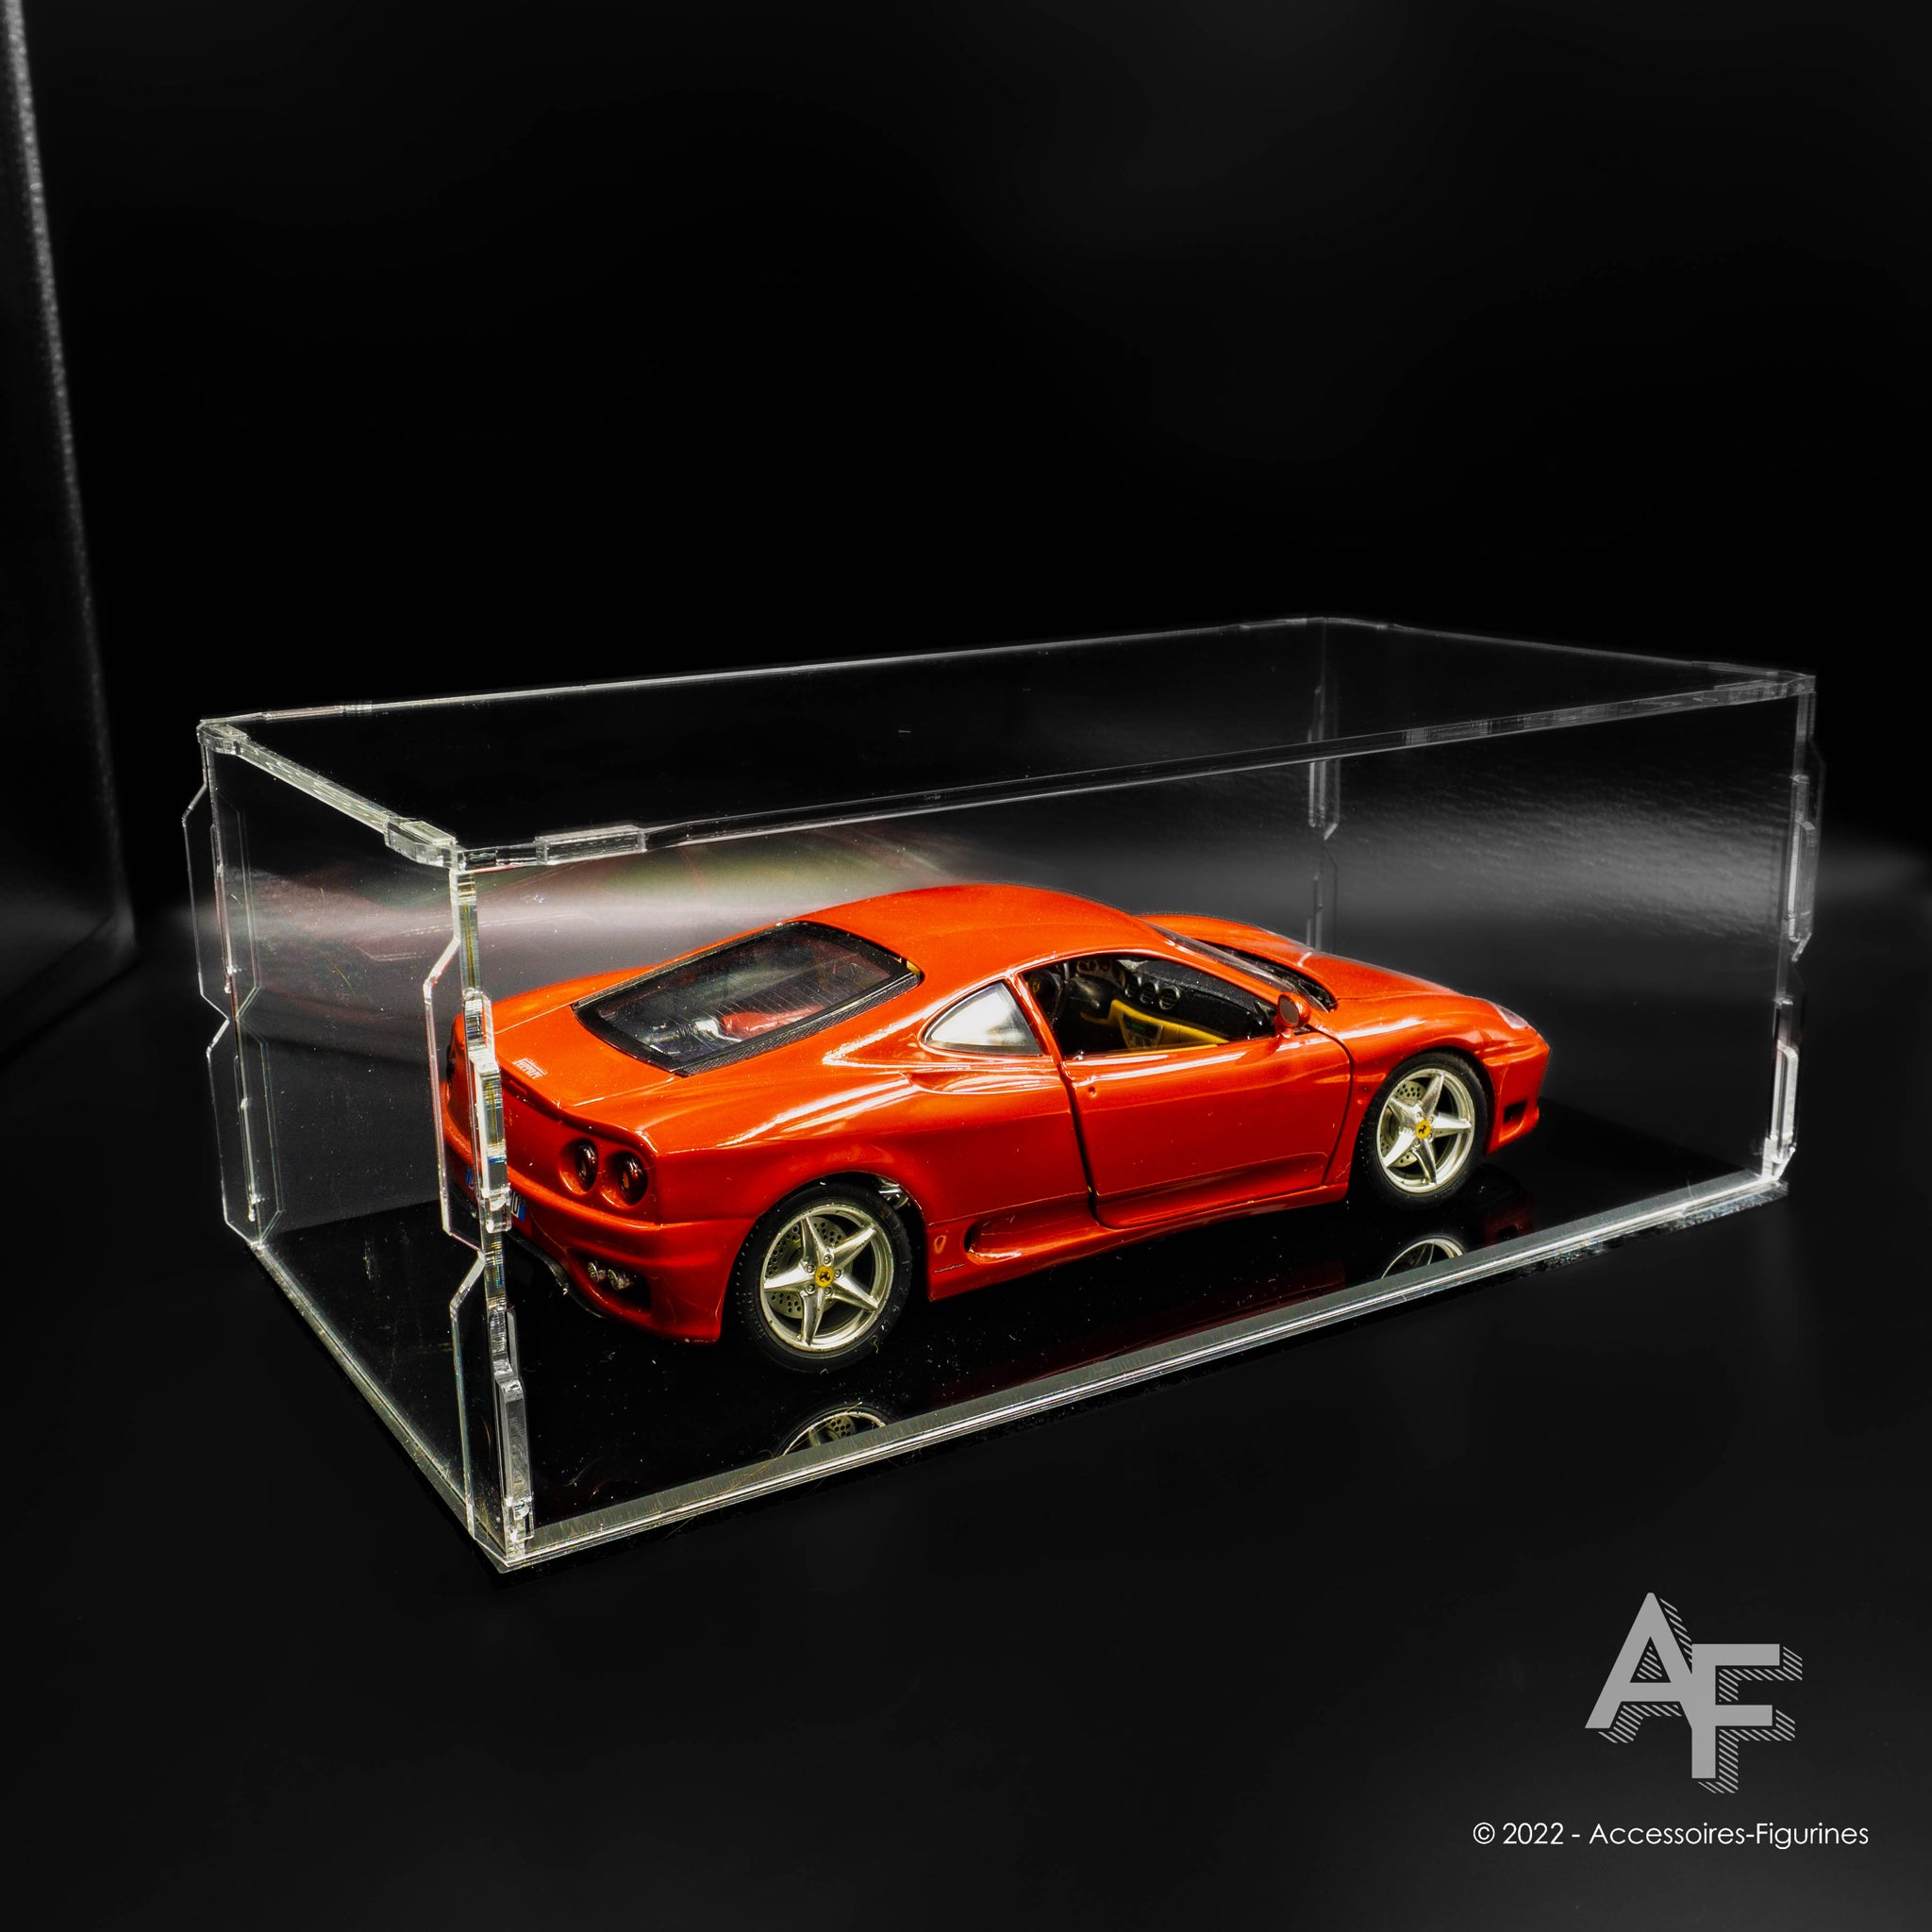 Cloche de protection pour véhicule Miniature modèle à l'échelle 1:18 –  Accessoires-Figurines